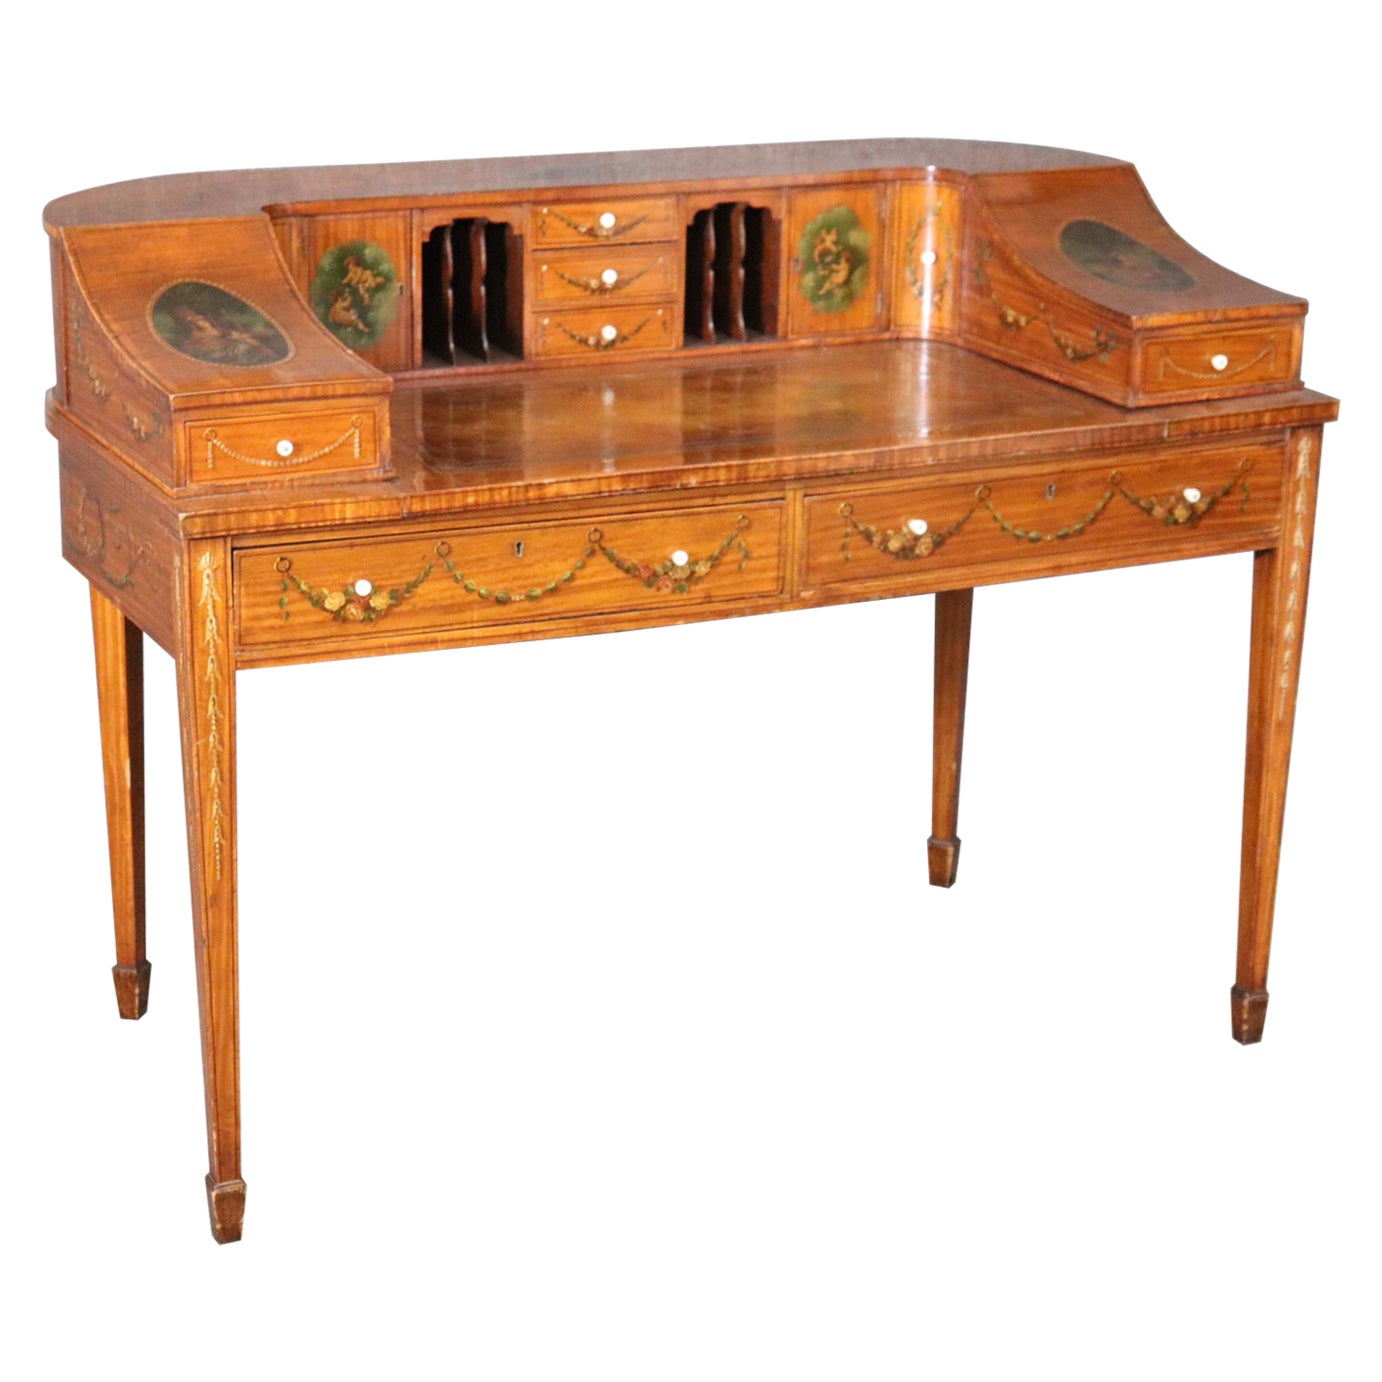 Carlton House-Schreibtisch aus englischem Seidenholz von hoher Qualität mit Putten und Musikthema